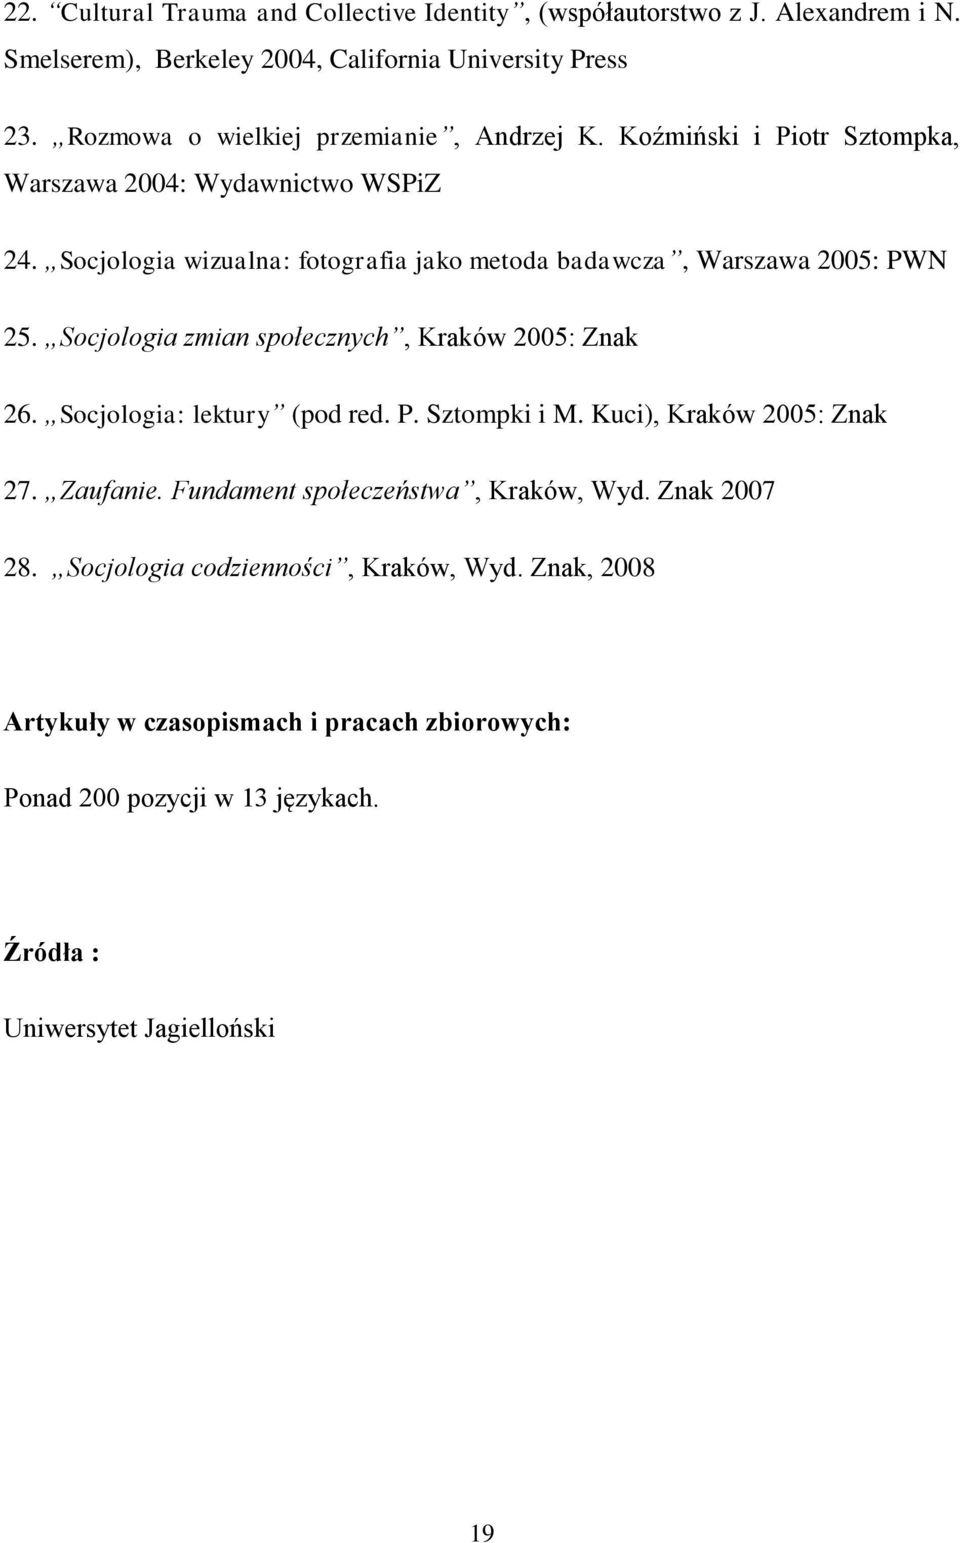 Socjologia wizualna: fotografia jako metoda badawcza, Warszawa 2005: PWN 25. Socjologia zmian społecznych, Kraków 2005: Znak 26. Socjologia: lektury (pod red. P. Sztompki i M.